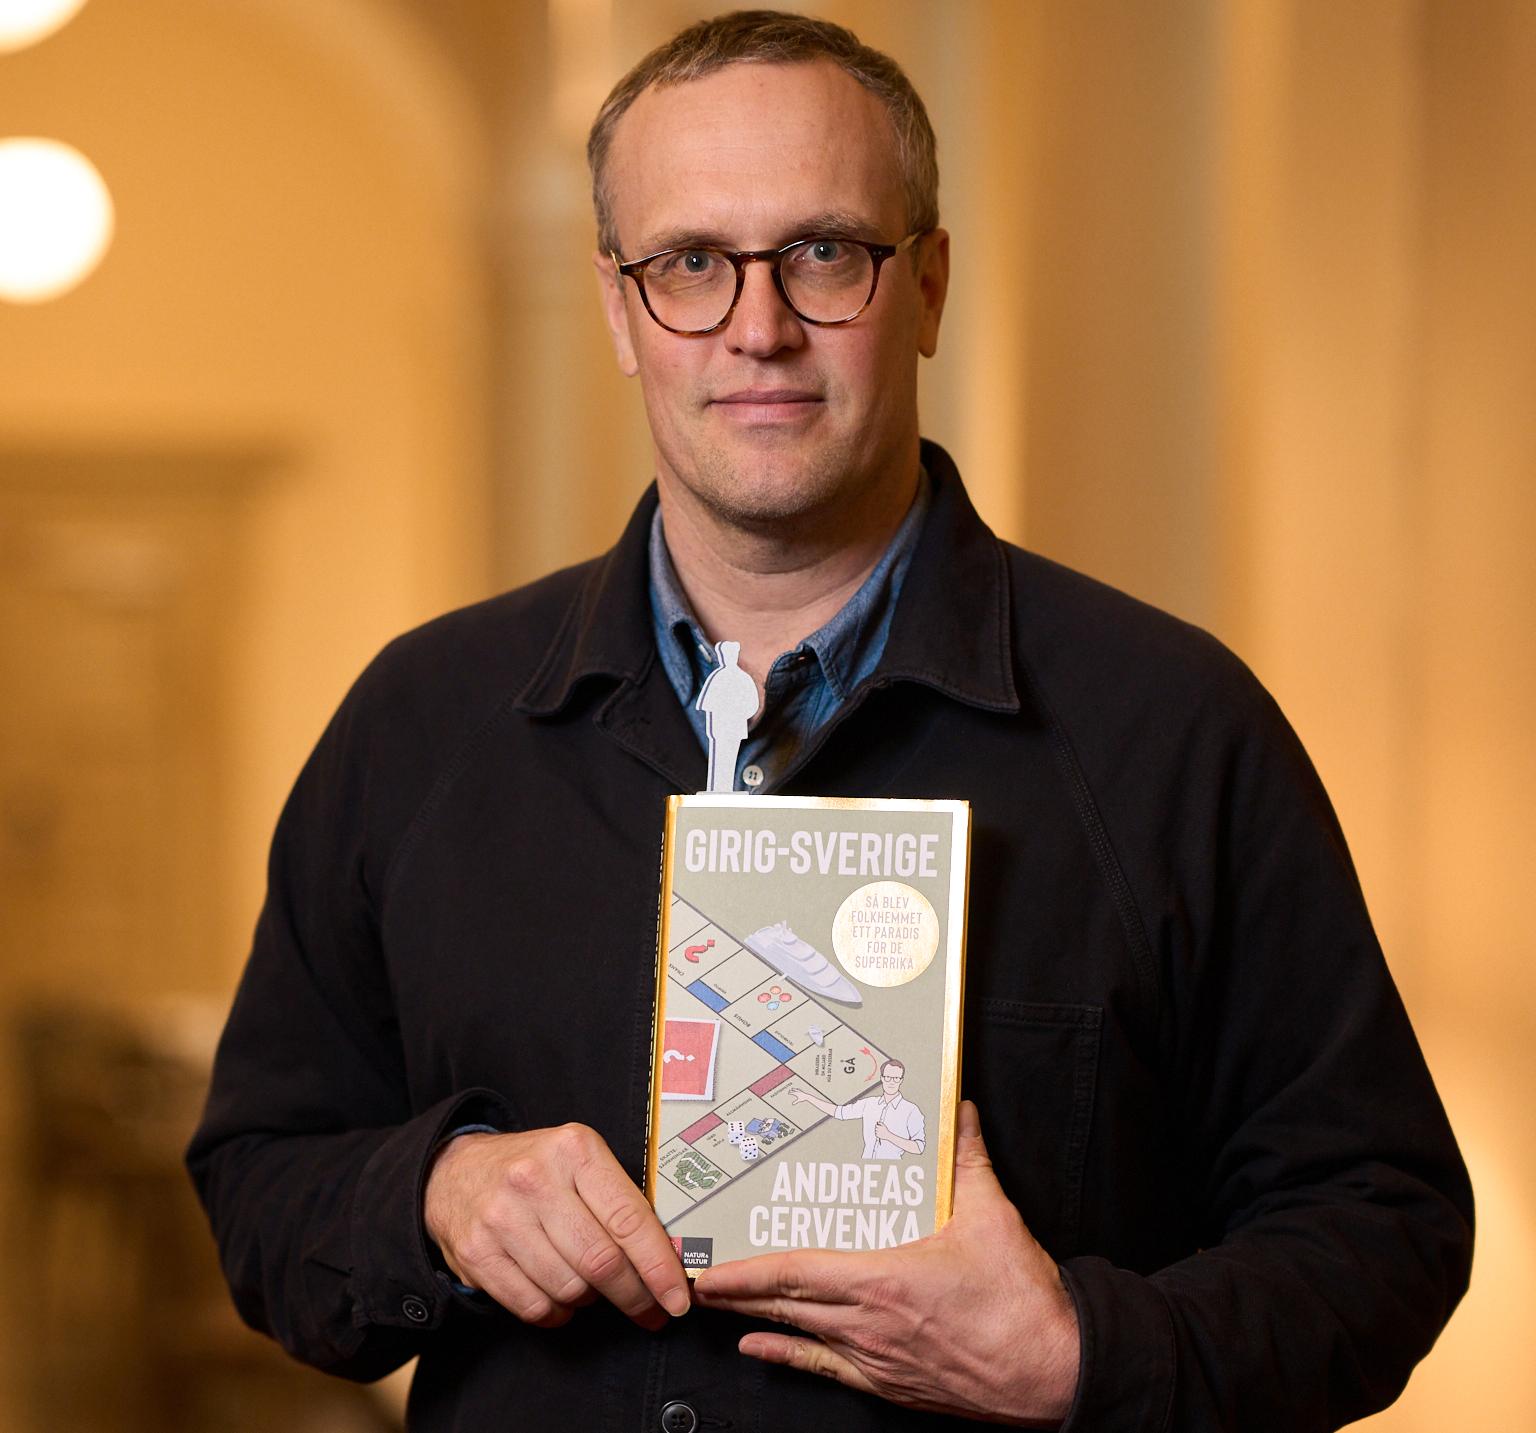 Andreas Cervenka, nominerad i fackboksklassen för sin ”Girig-Sverige. Så blev folkhemmet ett paradis för de superrika”.